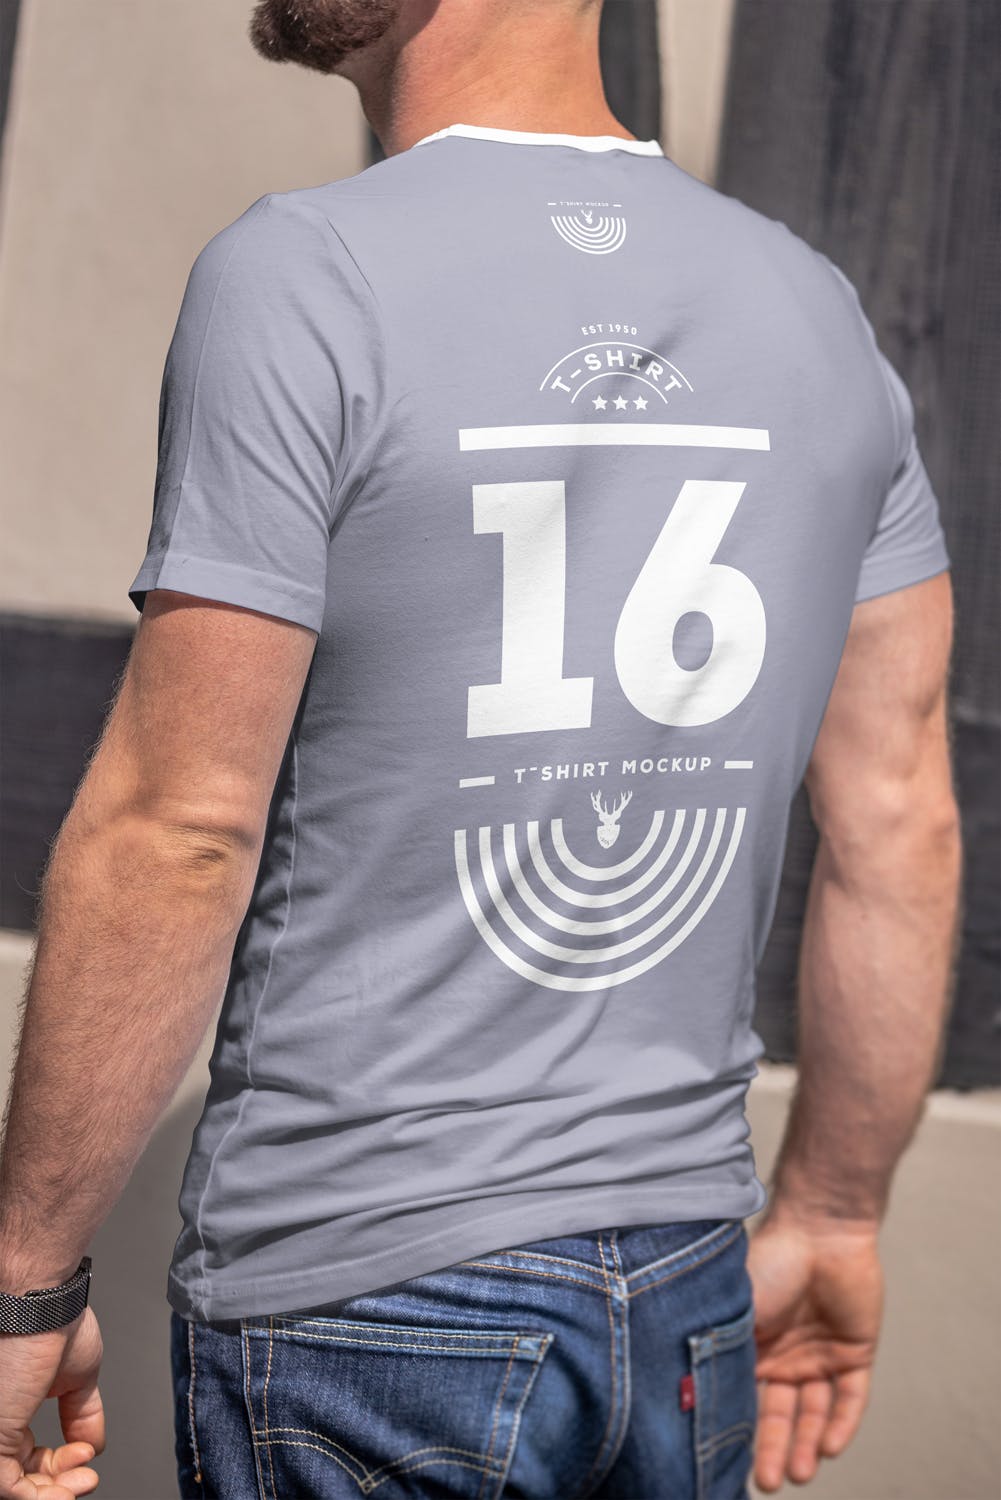 男士印花T恤真实模特上身效果图样机16图库精选模板 T-Shirt Mock-up 5插图(9)